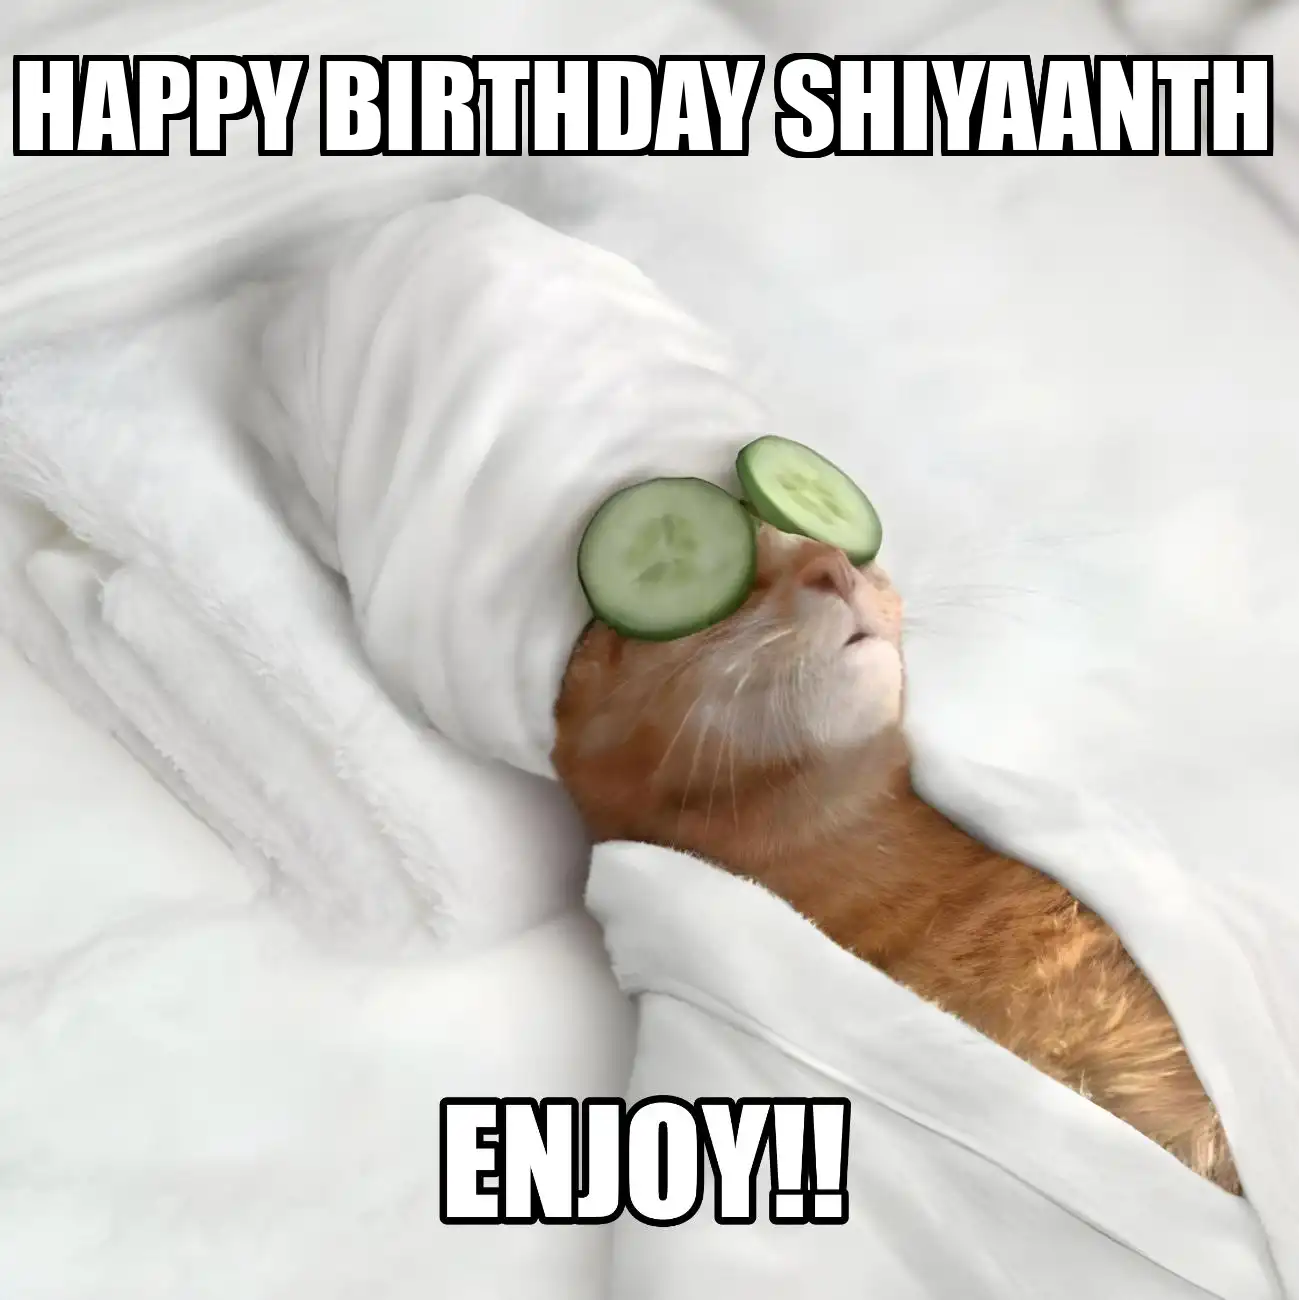 Happy Birthday Shiyaanth Enjoy Cat Meme